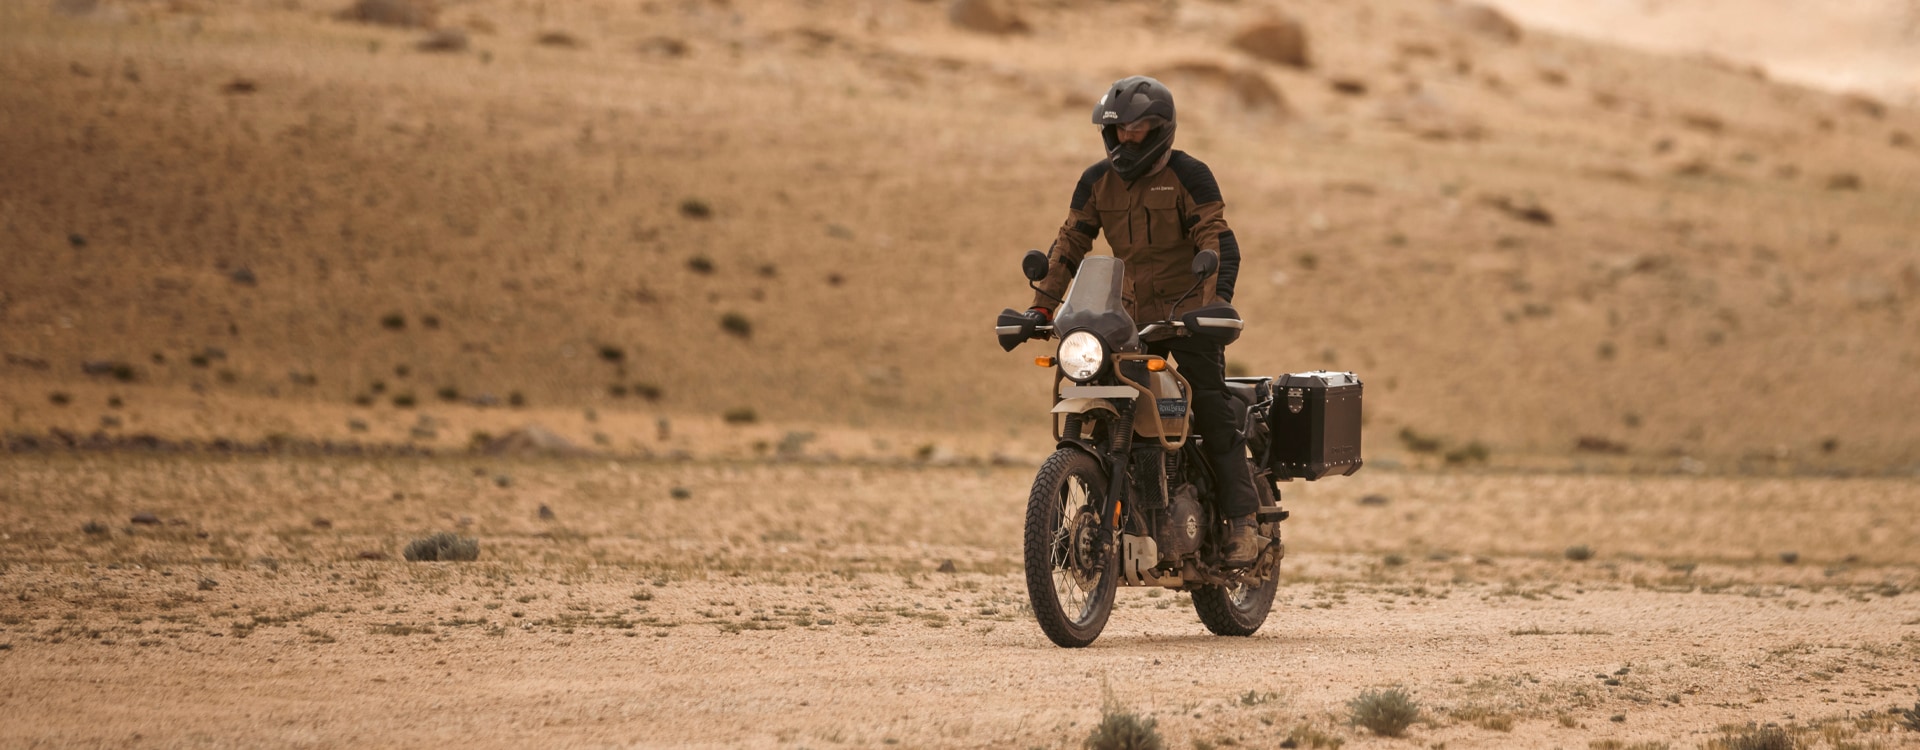 Himalayan - Tour-Minded Design Motorcycle